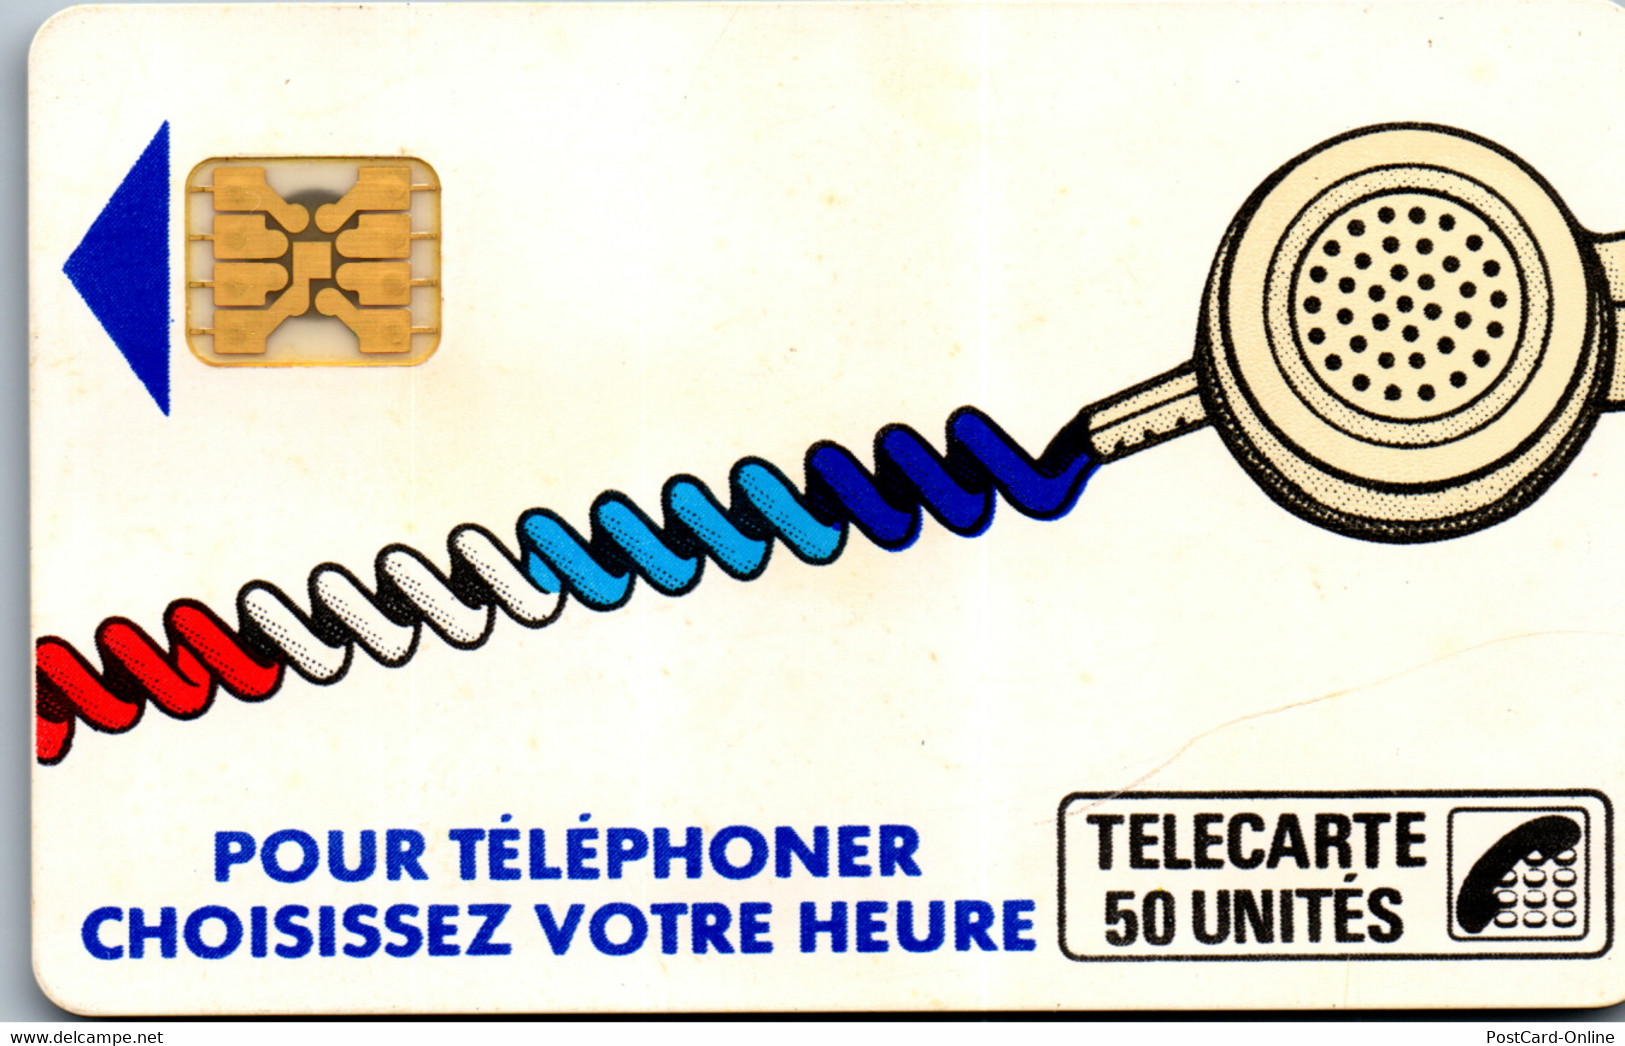 19261 - Frankreich - Pour Telephoner Choisissez Votre Heure , 50 Unites - Cordons'